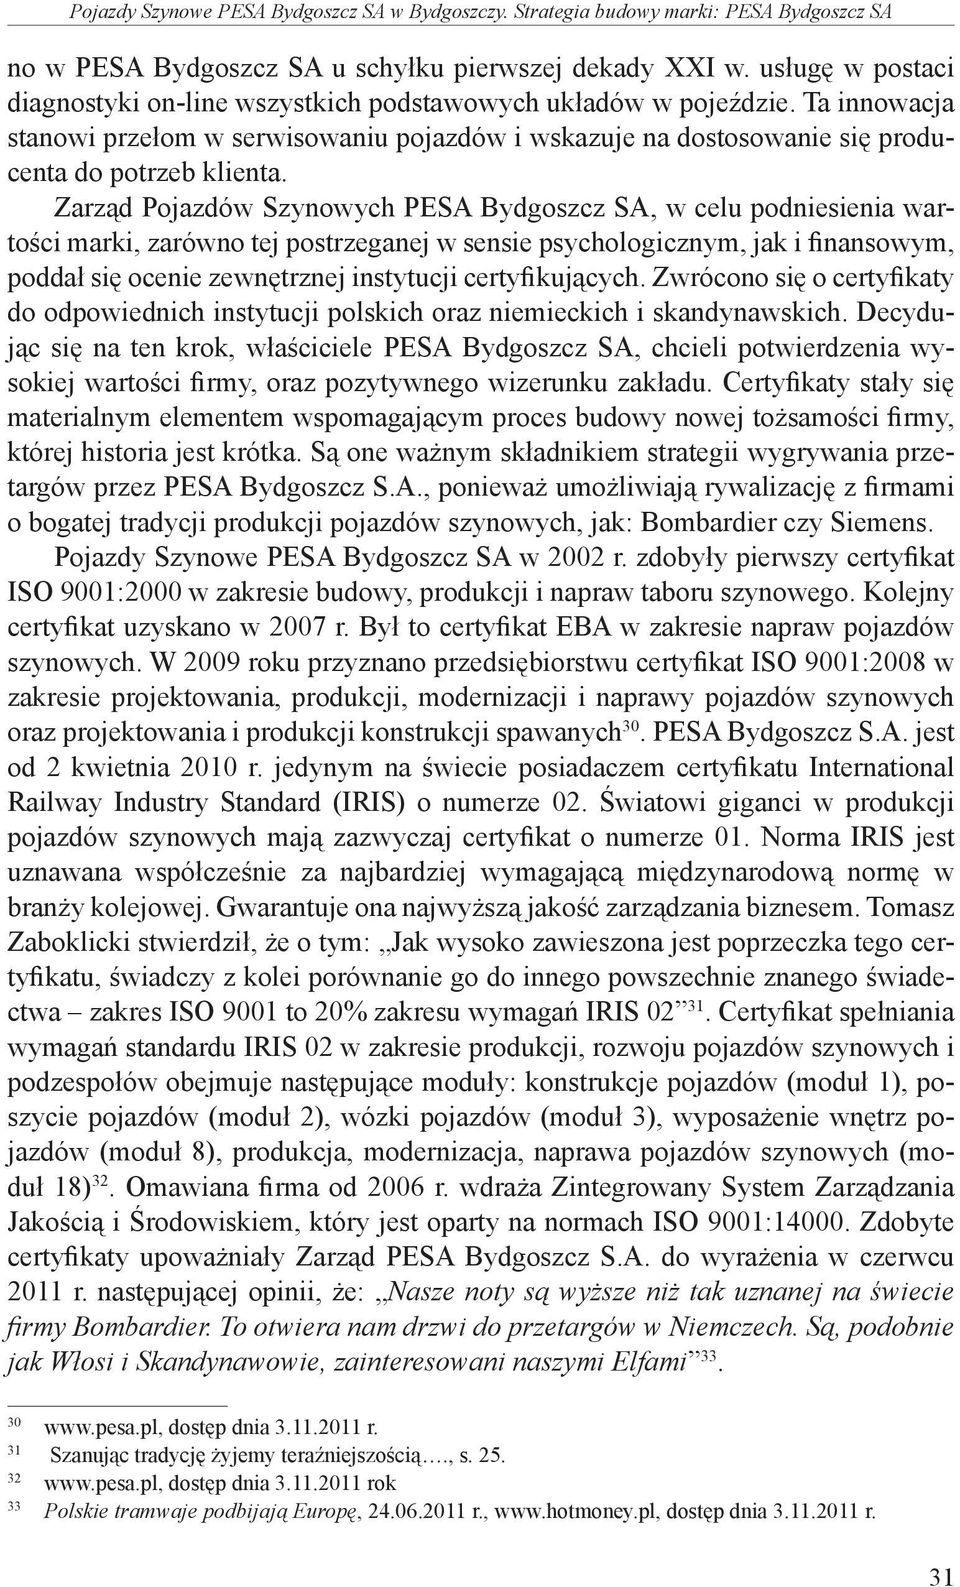 Zarząd Pojazdów Szynowych PESA Bydgoszcz SA, w celu podniesienia wartości marki, zarówno tej postrzeganej w sensie psychologicznym, jak i finansowym, poddał się ocenie zewnętrznej instytucji